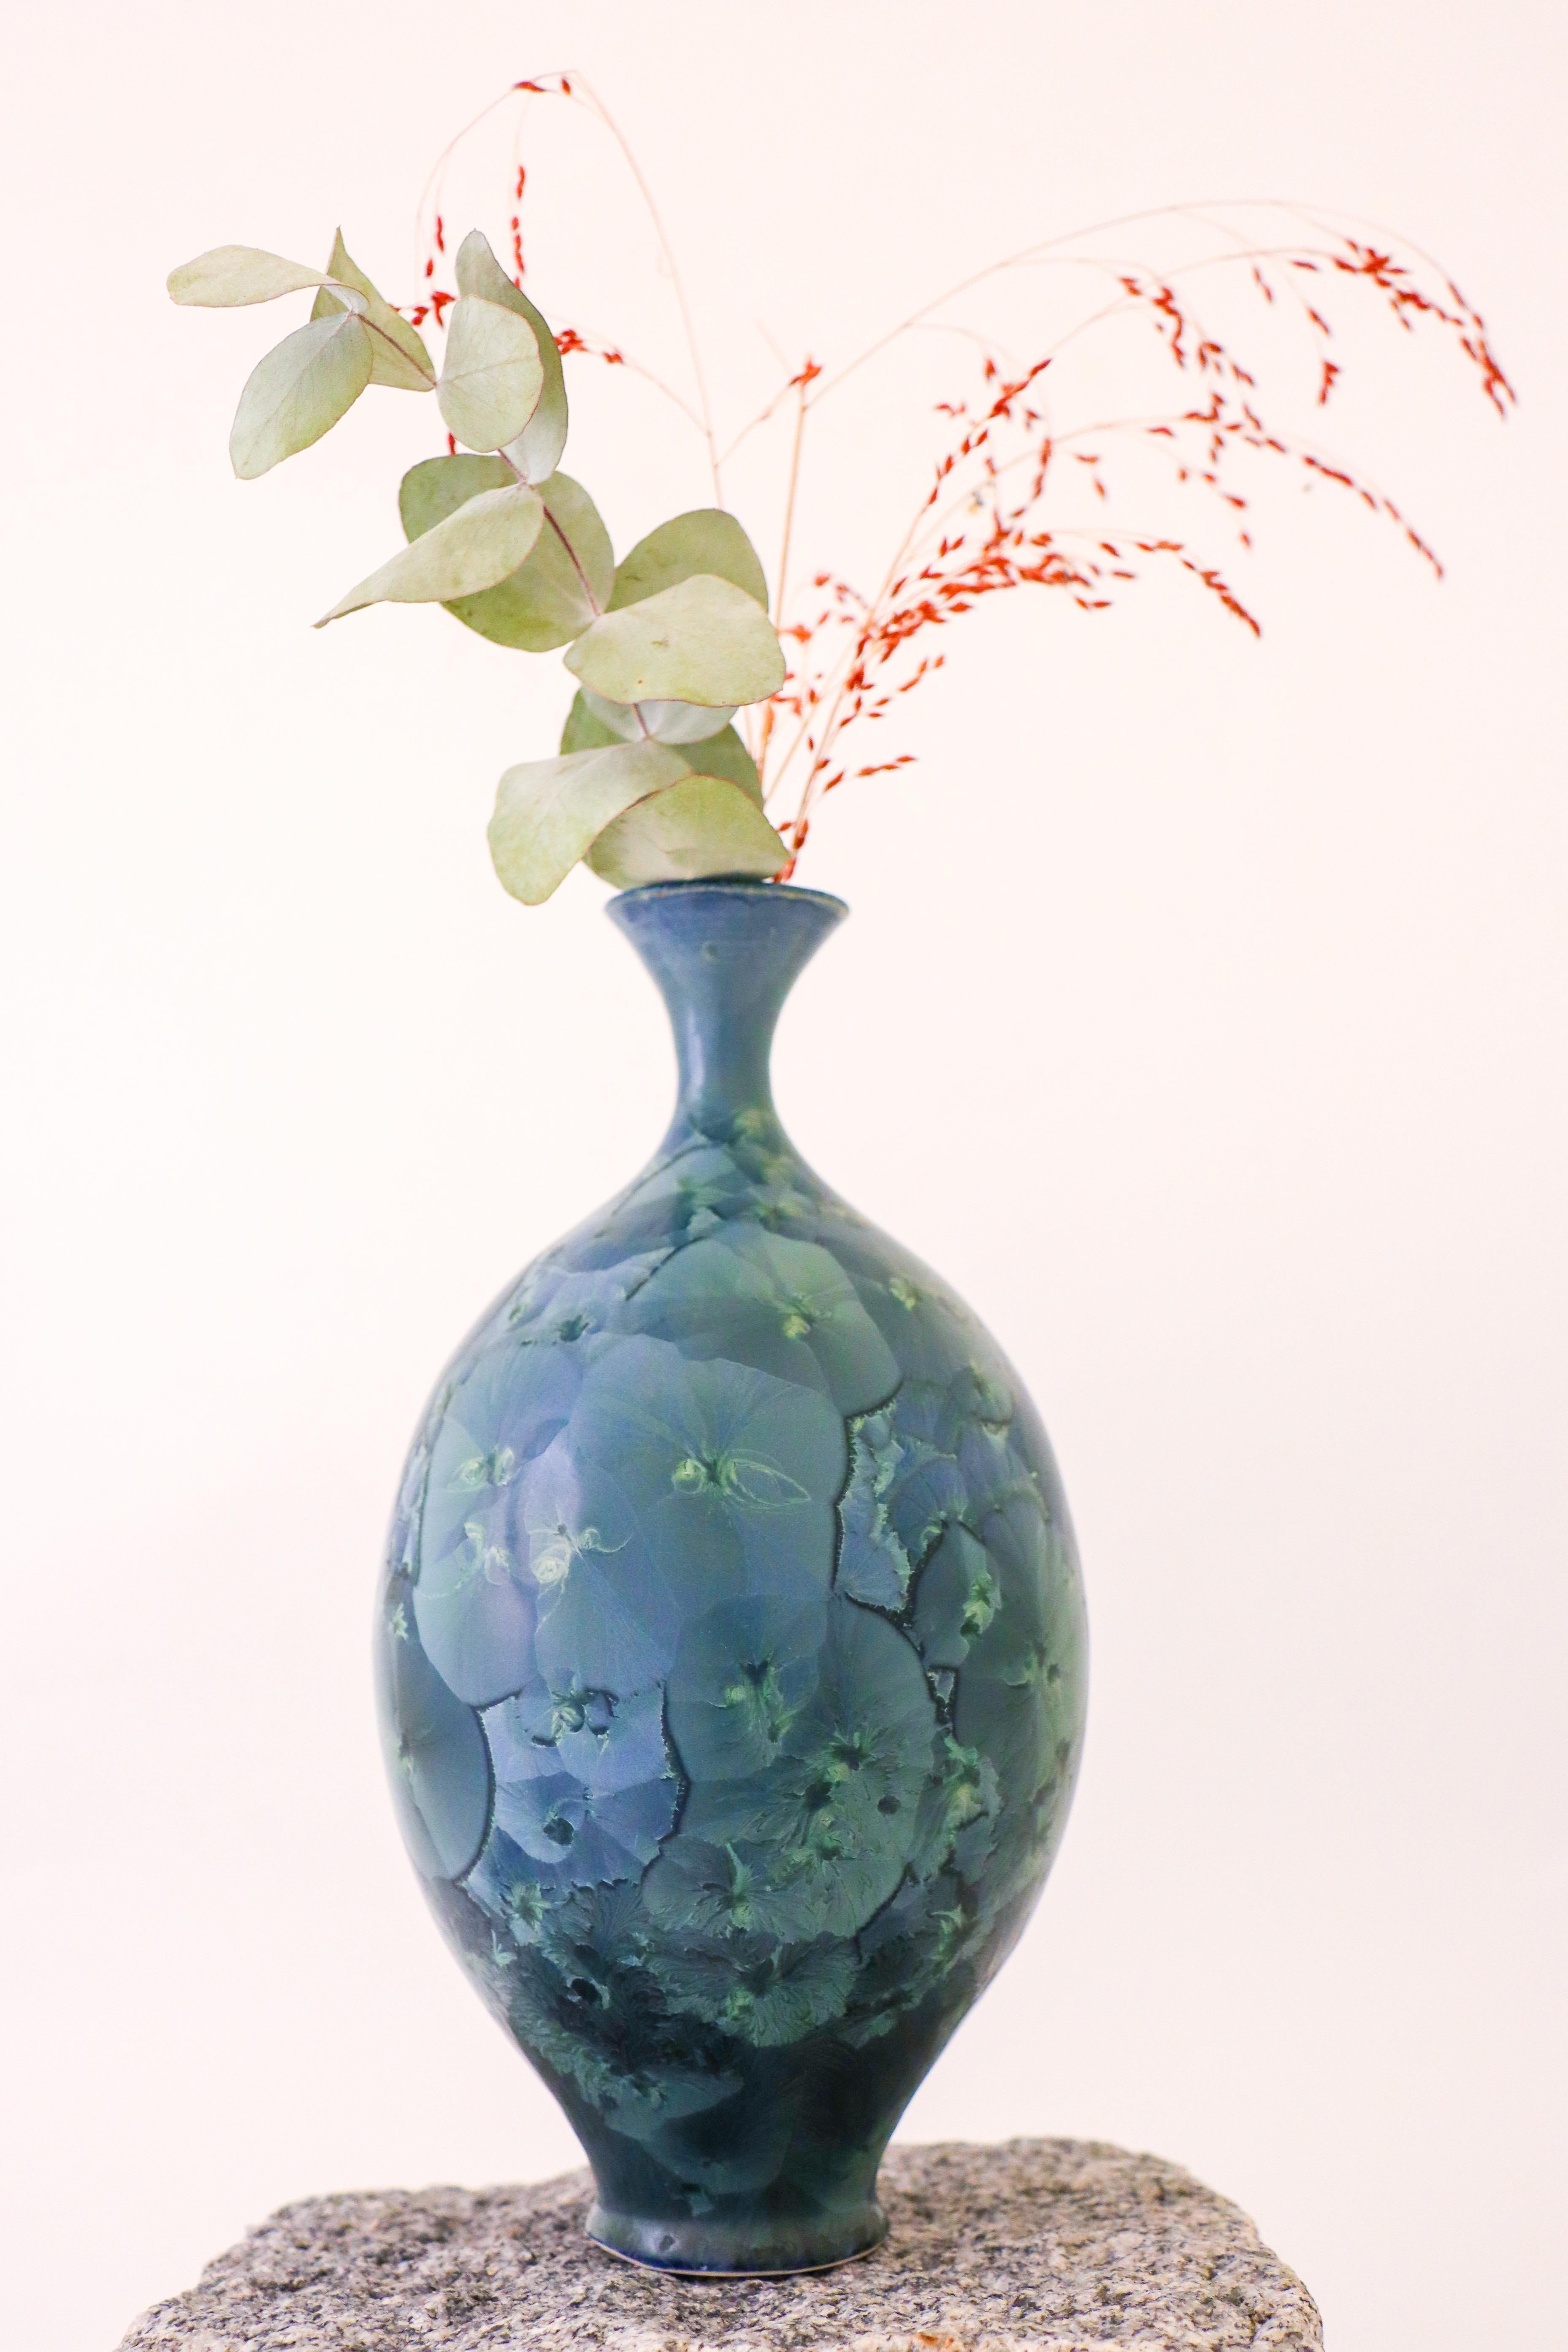 Eine wunderschöne grün/blau getönte Vase mit einer atemberaubenden kristallinen Glasur, entworfen von Isak Isaksson in Schweden. Die Vase ist 22,5 cm hoch und hat einen Durchmesser von etwa 11,5 cm und ist in einem ausgezeichneten Zustand. Dies ist